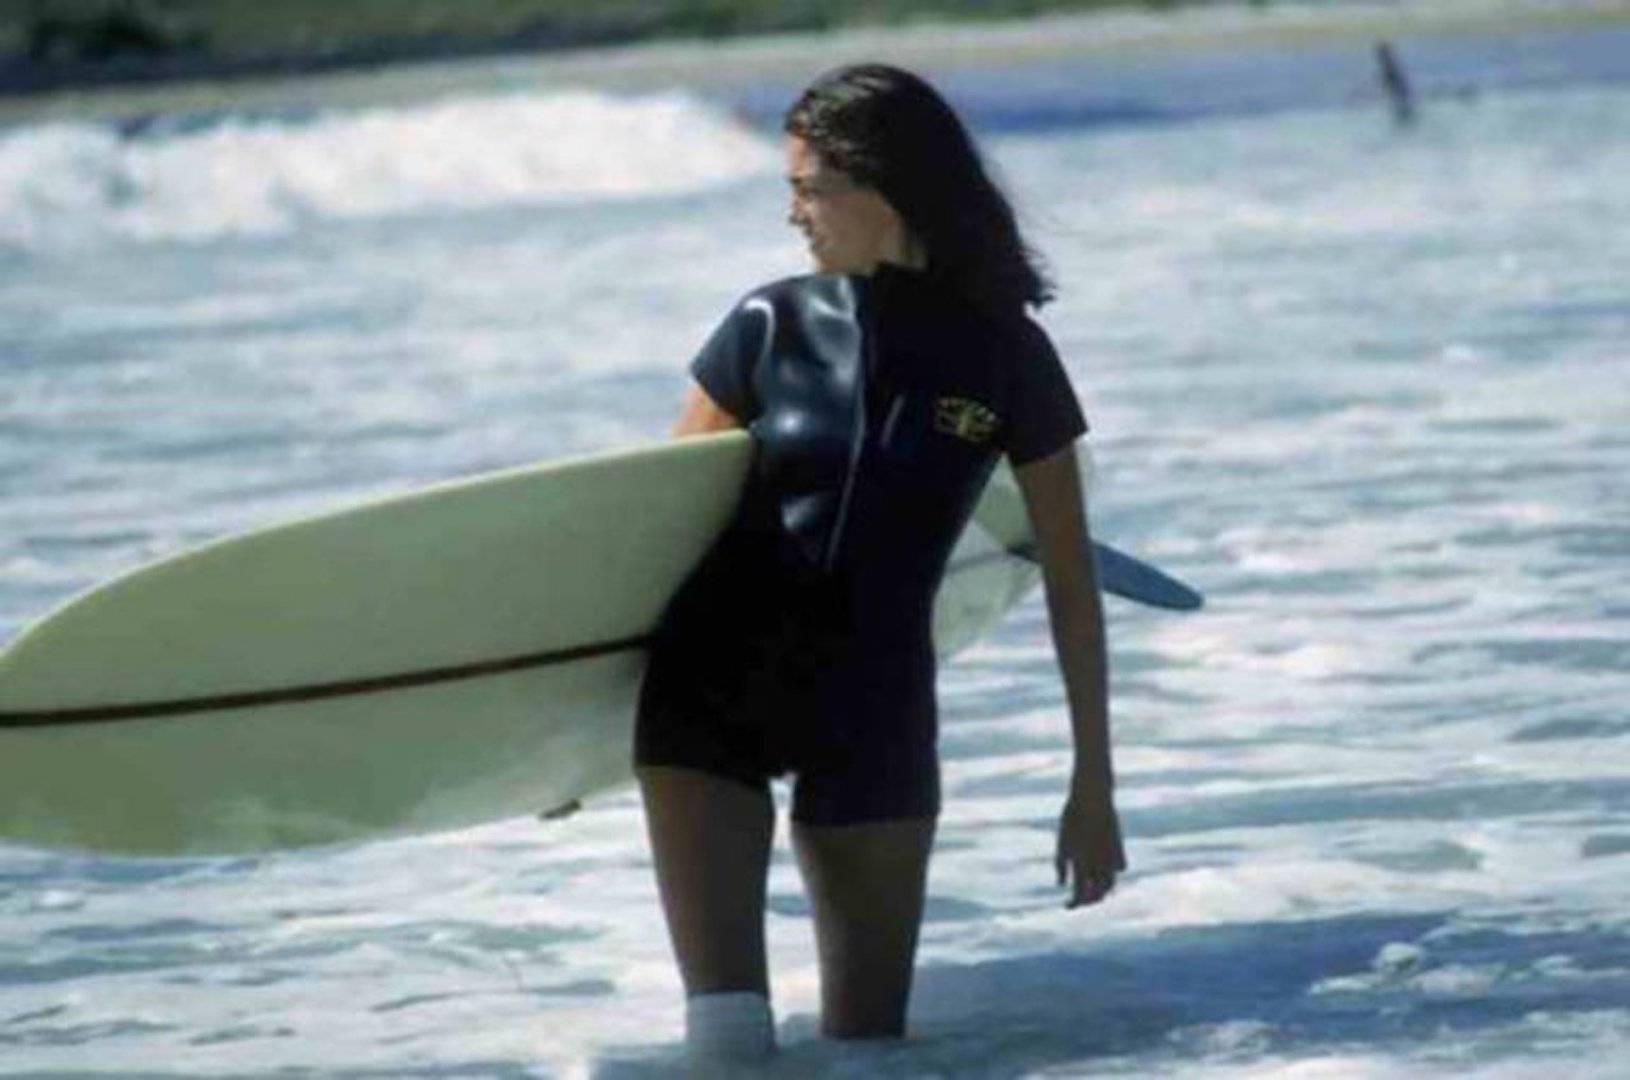 Das amerikanische Society-Girl Minnie Cushing trägt ihr Surfbrett unter dem Arm, September 1965.

Nachlassgestempelte und handnummerierte Auflage von 150 Stück mit Echtheitszertifikat des Nachlasses. 

Chromogener Lambda-Druck 

Kostenloser Versand